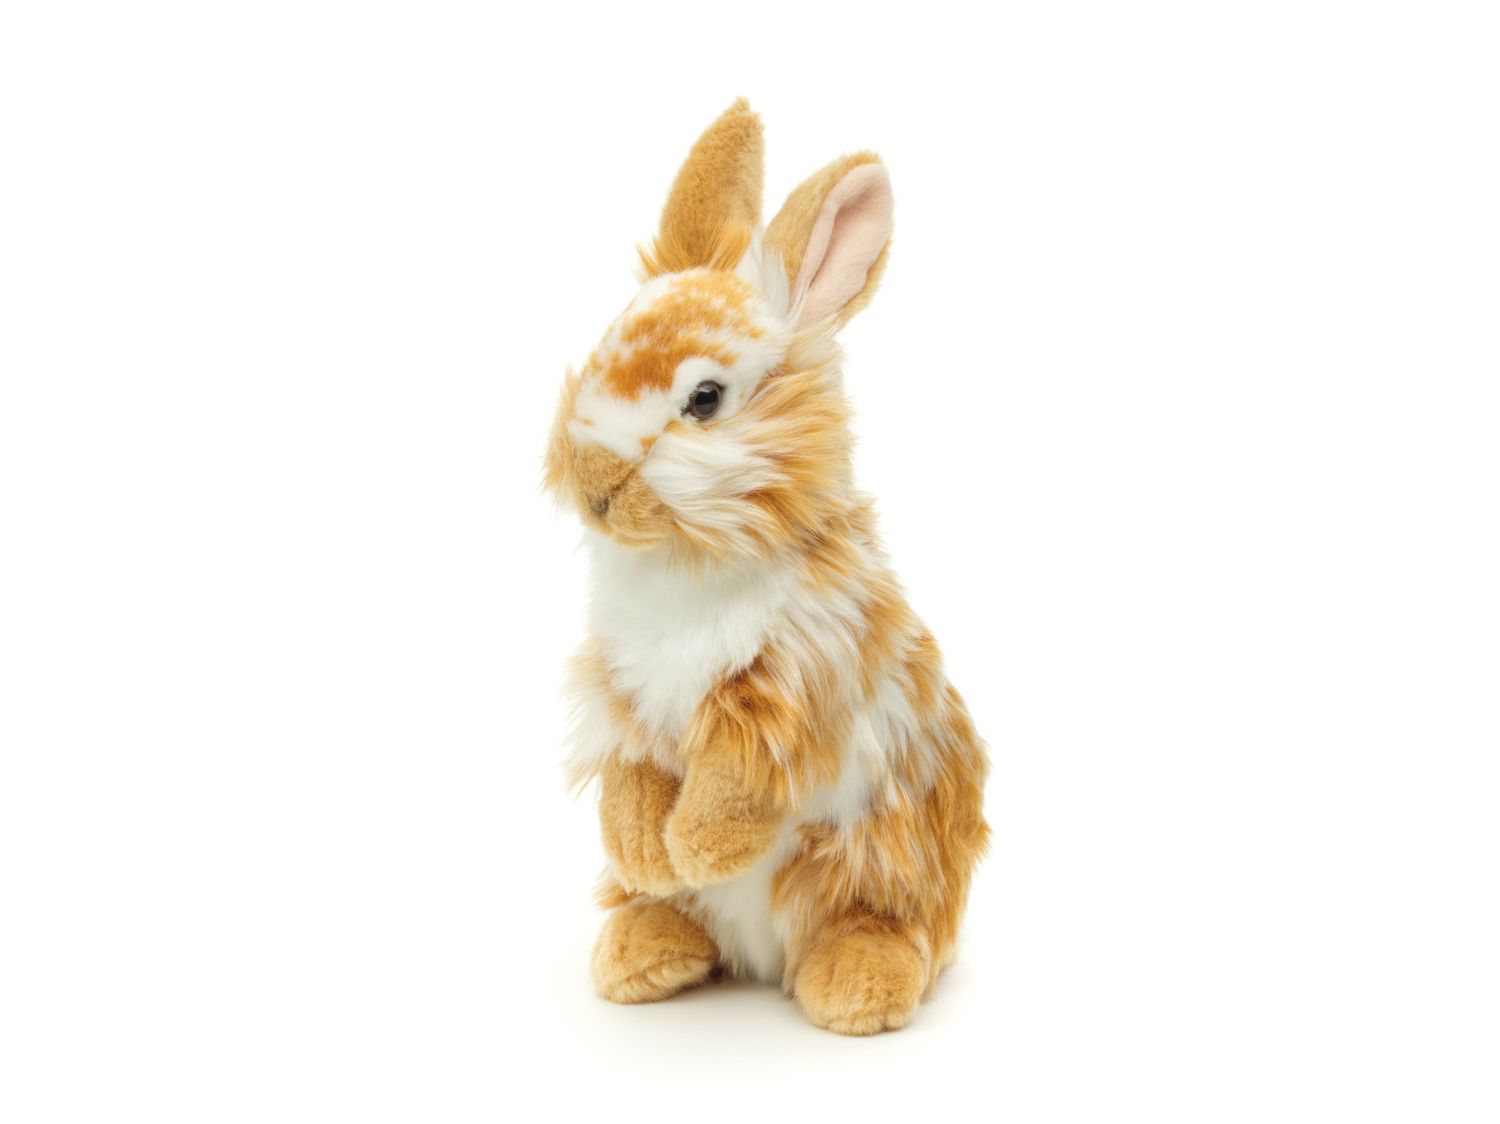 Löwenkopf-Kaninchen mit aufgestellten Ohren - stehend - Gold-weiß gescheckt - 23 cm (Höhe) - Plüsch-Hase - Plüschtier, Kuscheltier